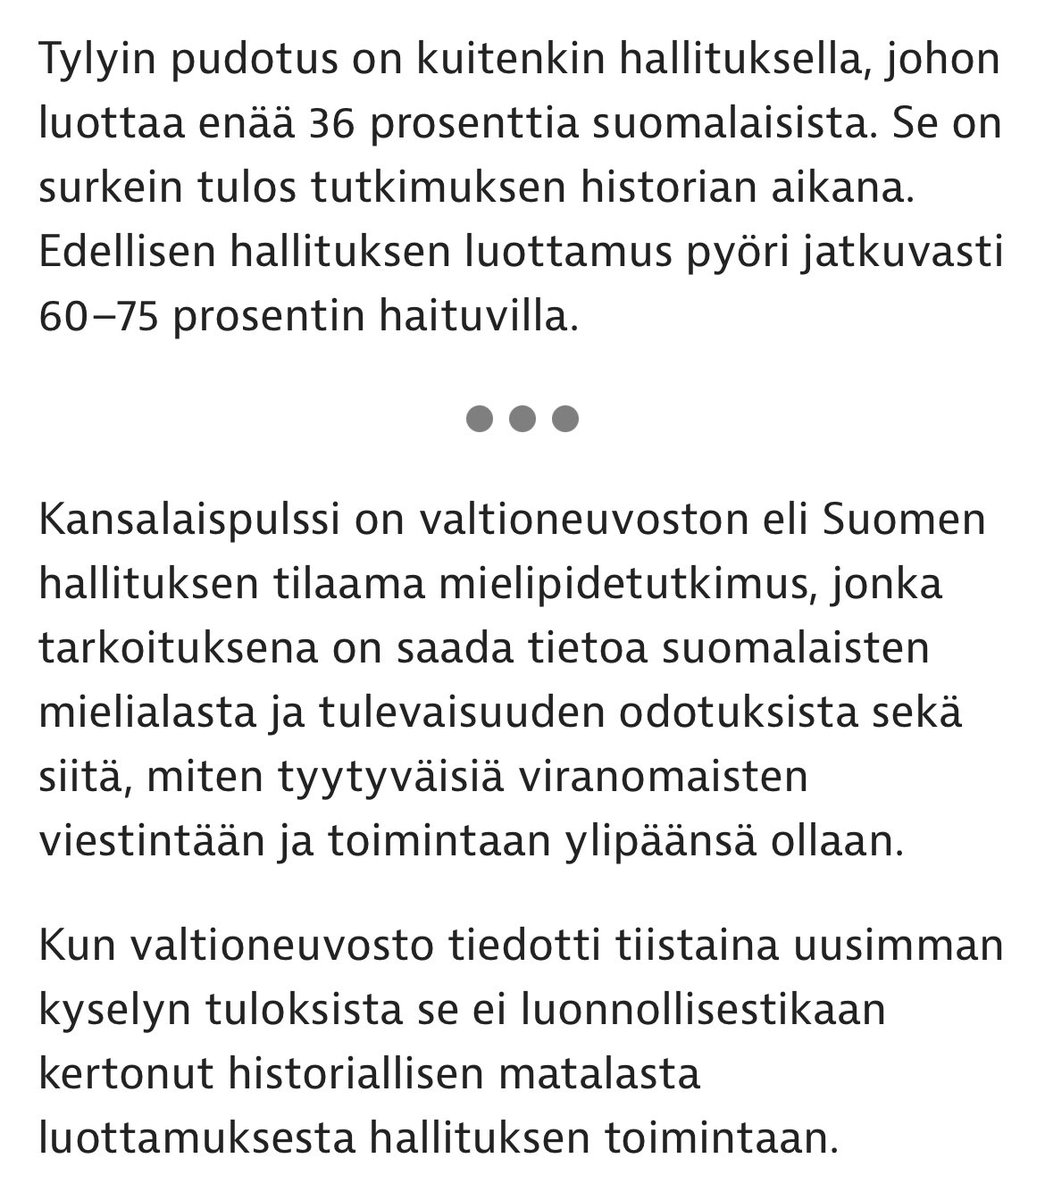 Hallitukseen luottaa enää 36% suomalaisista. Se on surkein tulos koskaan. #hallitus #politiikka #luottamus